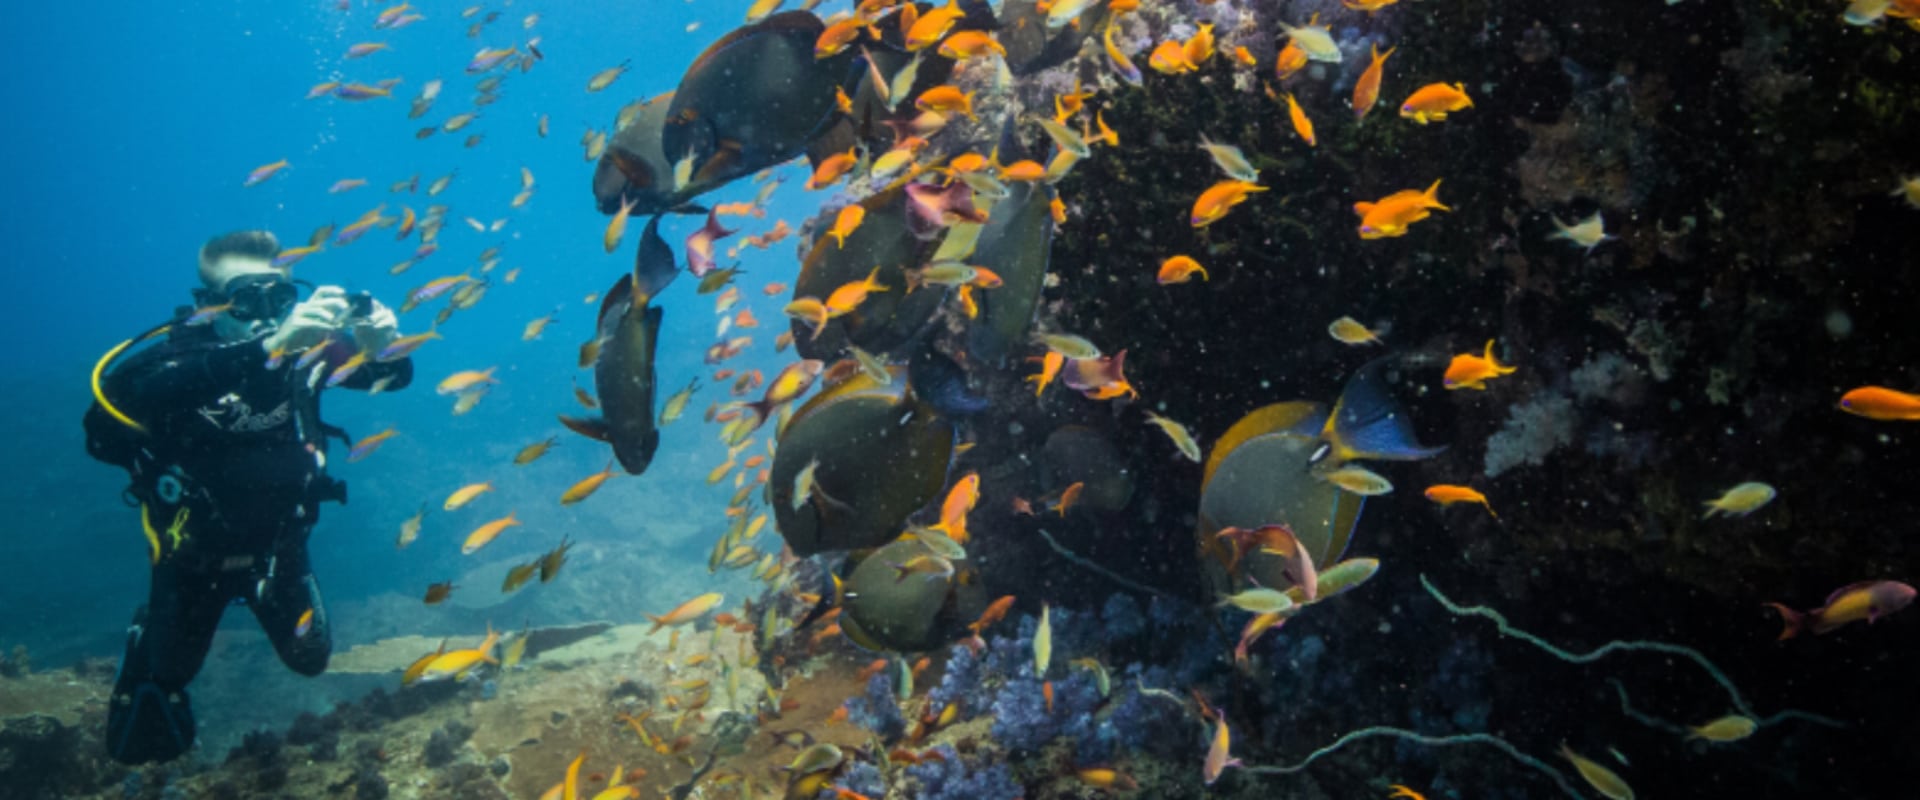 Mergulhe ou mergulhe com snorkel nos recifes em um Parque Nacional Marinho intocado